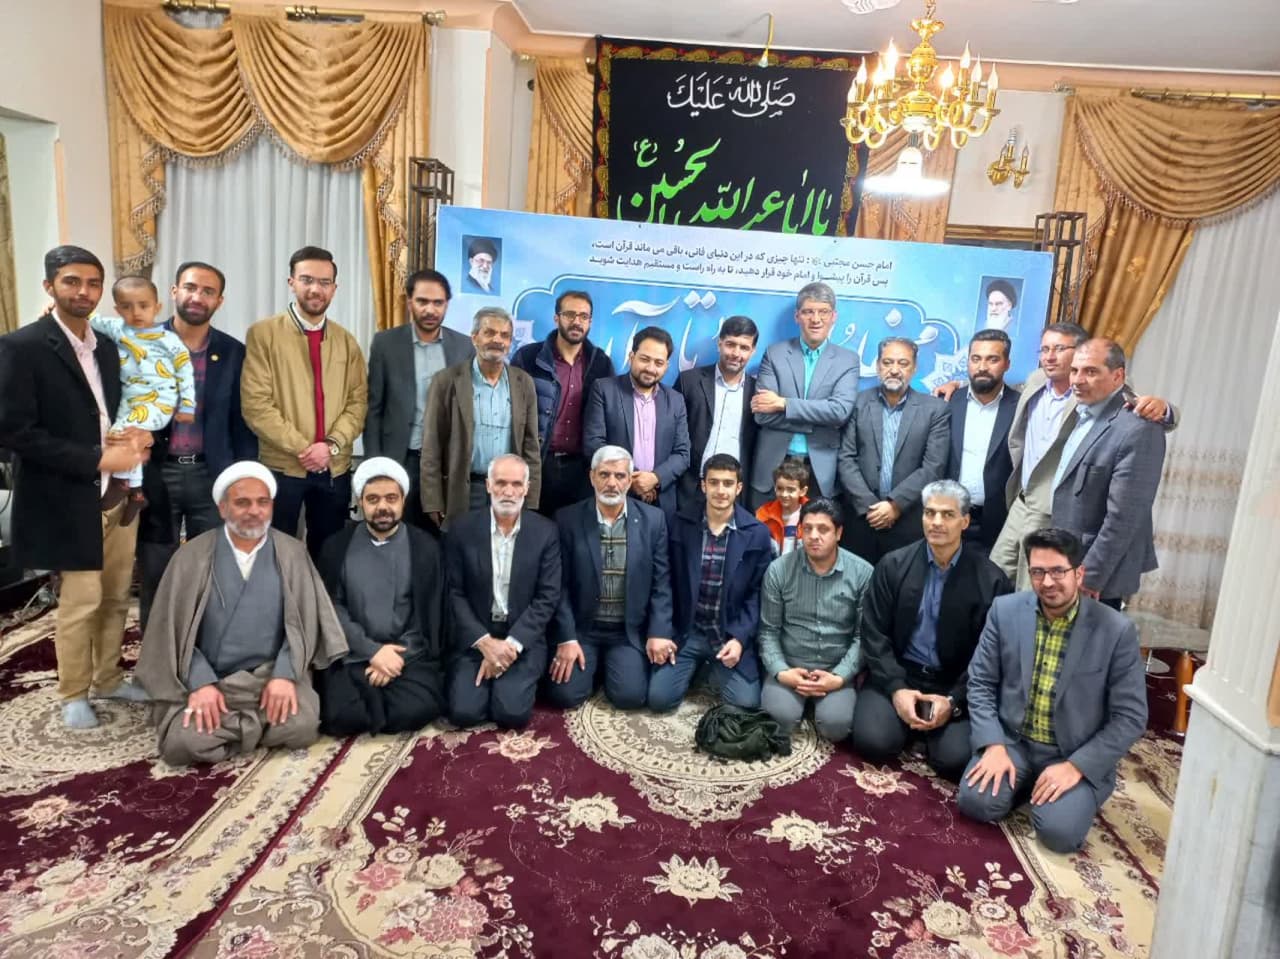 برگزاری محفل انس با قرآن با حضور قاری بین المللی در یزد  